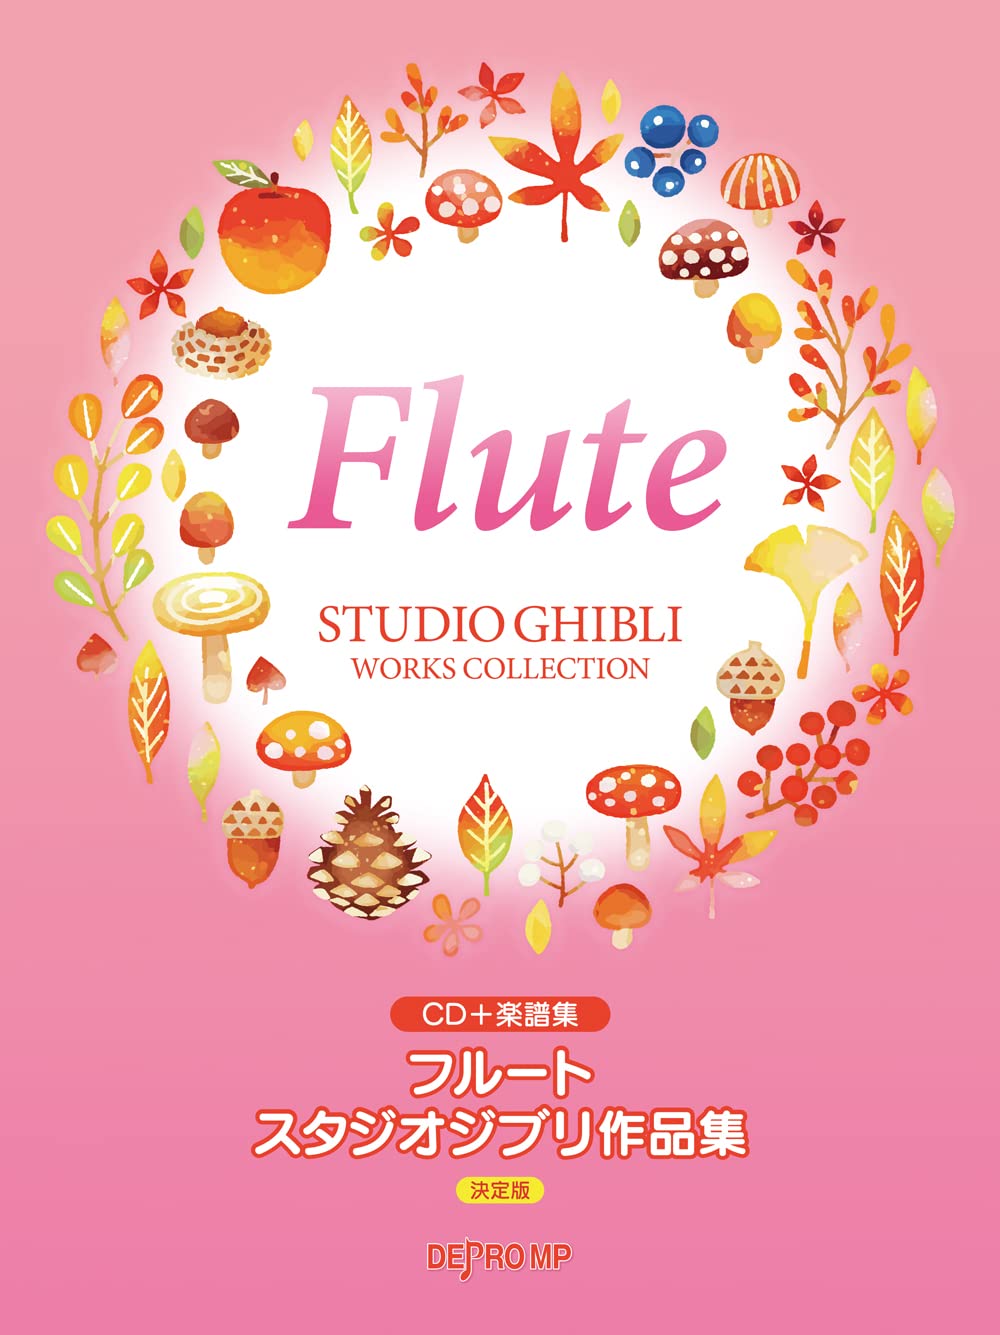 Studio Ghibli Collection Flute Solo w/CD(Piano accompaniment Tracks)